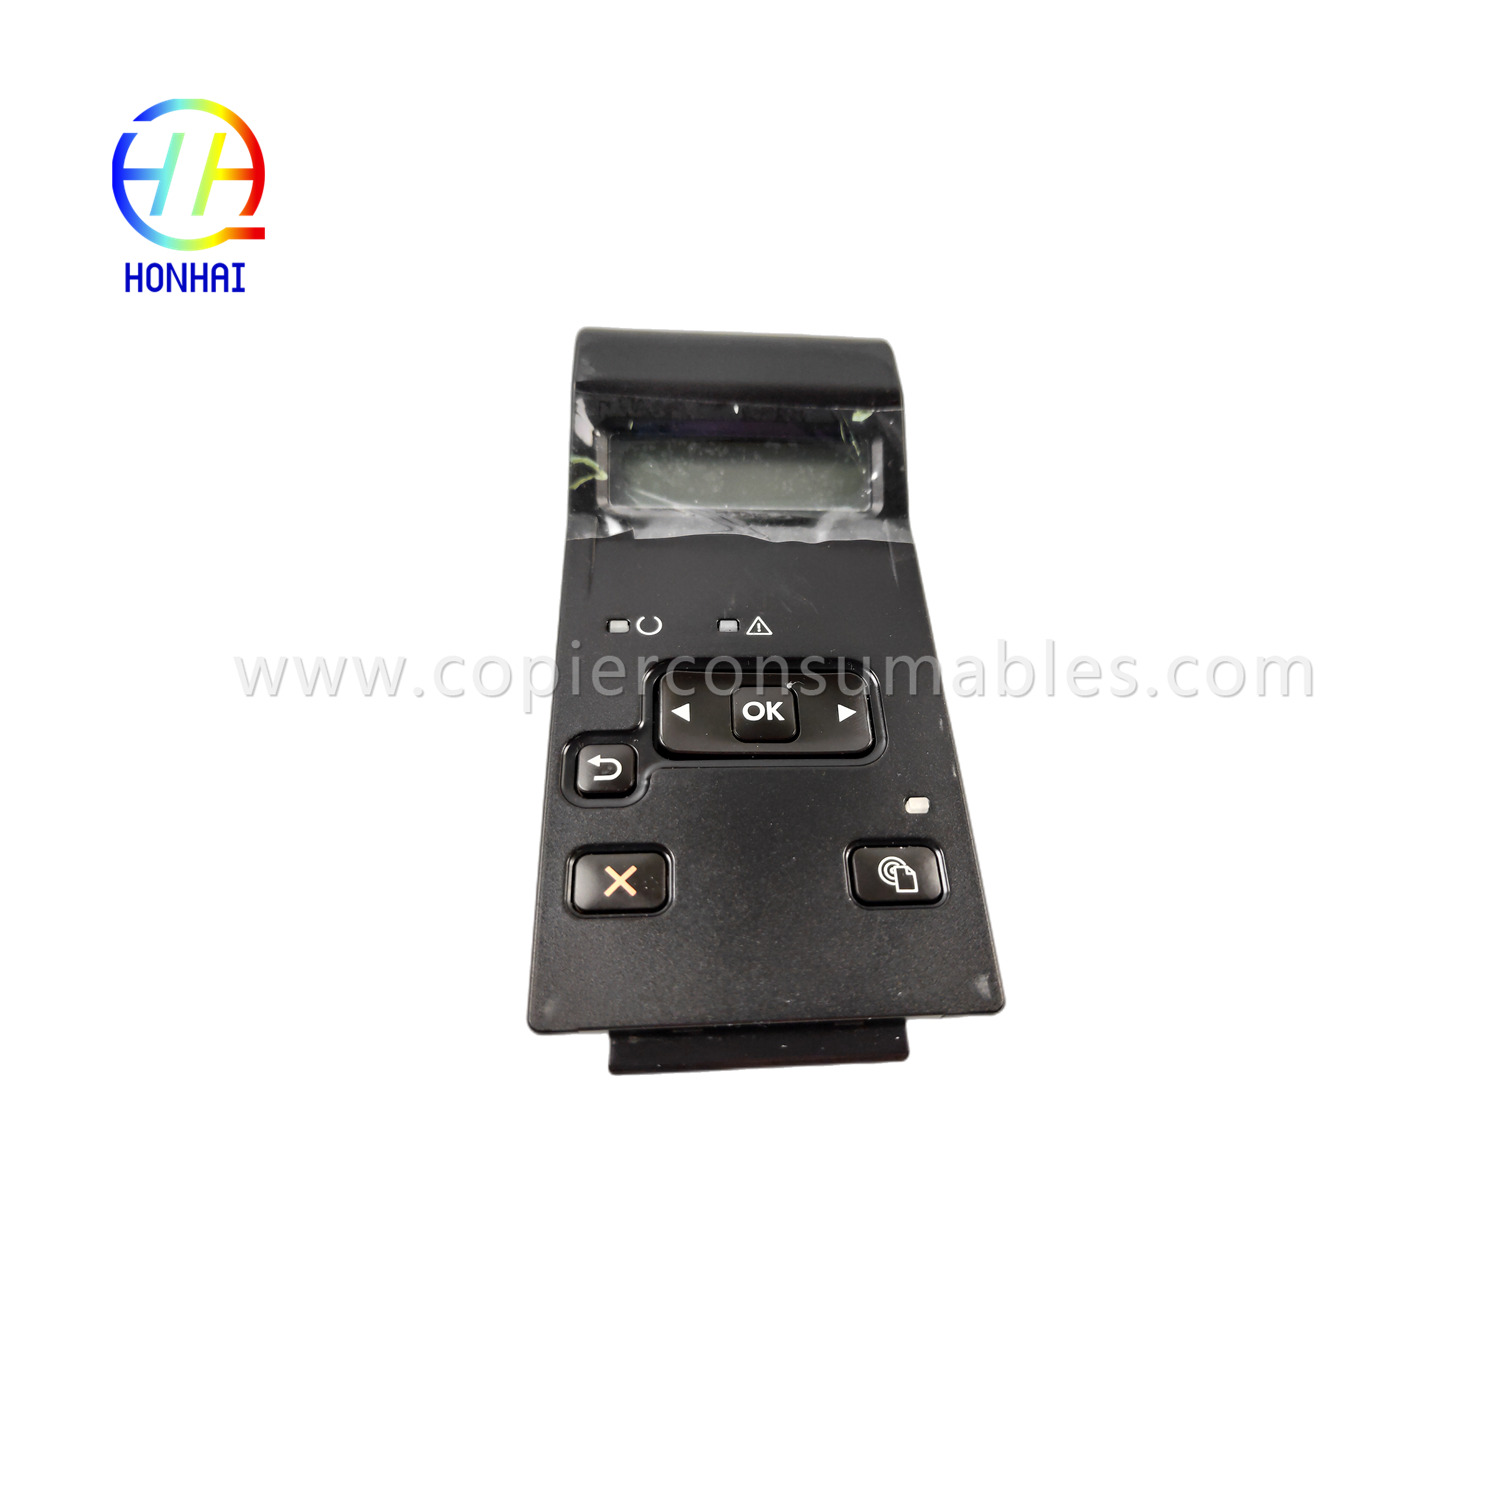 Control Panel Touch Screen foar HP LaserJet 400 M401d M401dn M401n M401 m401 401d 401dn 401n